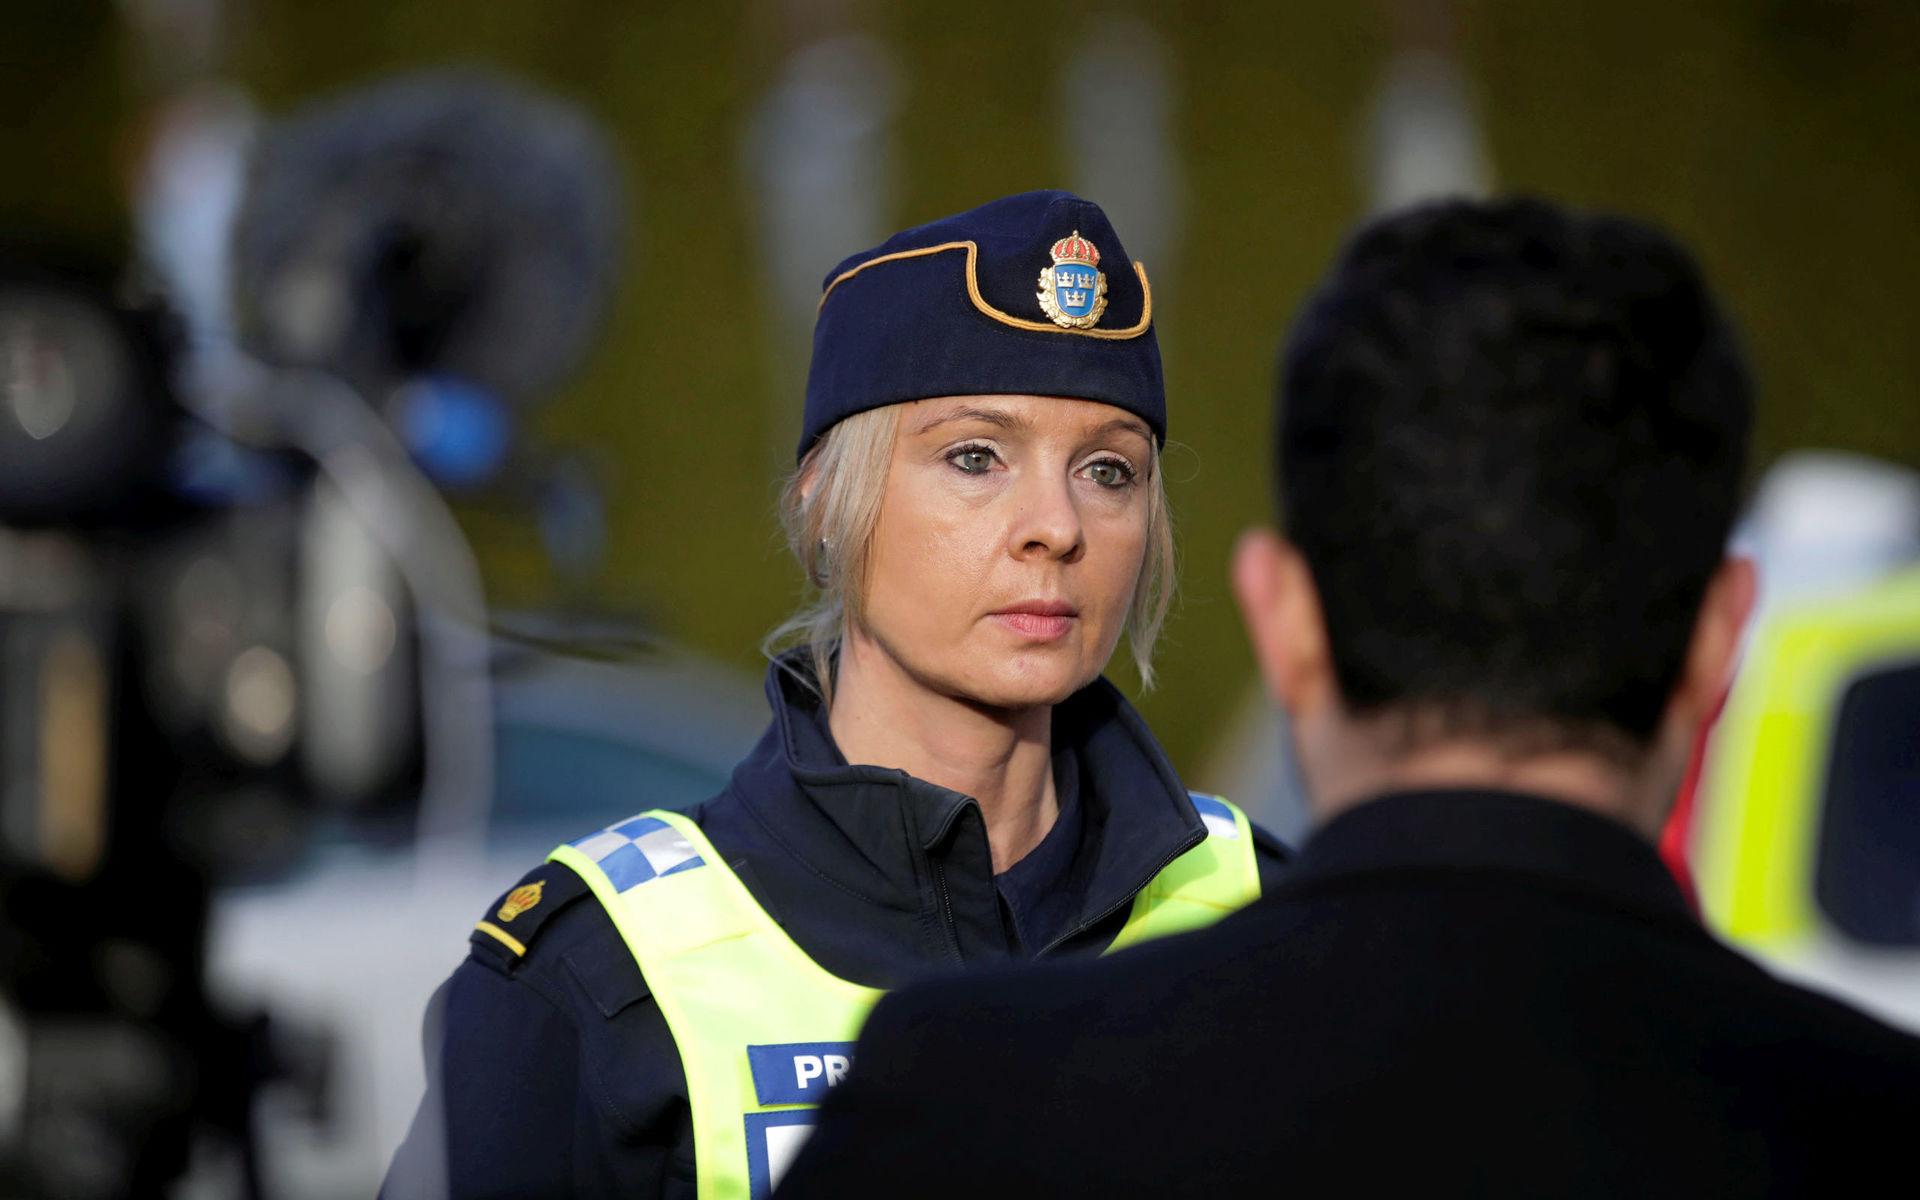 Polisens presstalesperson i region väst, Anna Göransson möter media i samband med sökandet efter Wilma. 